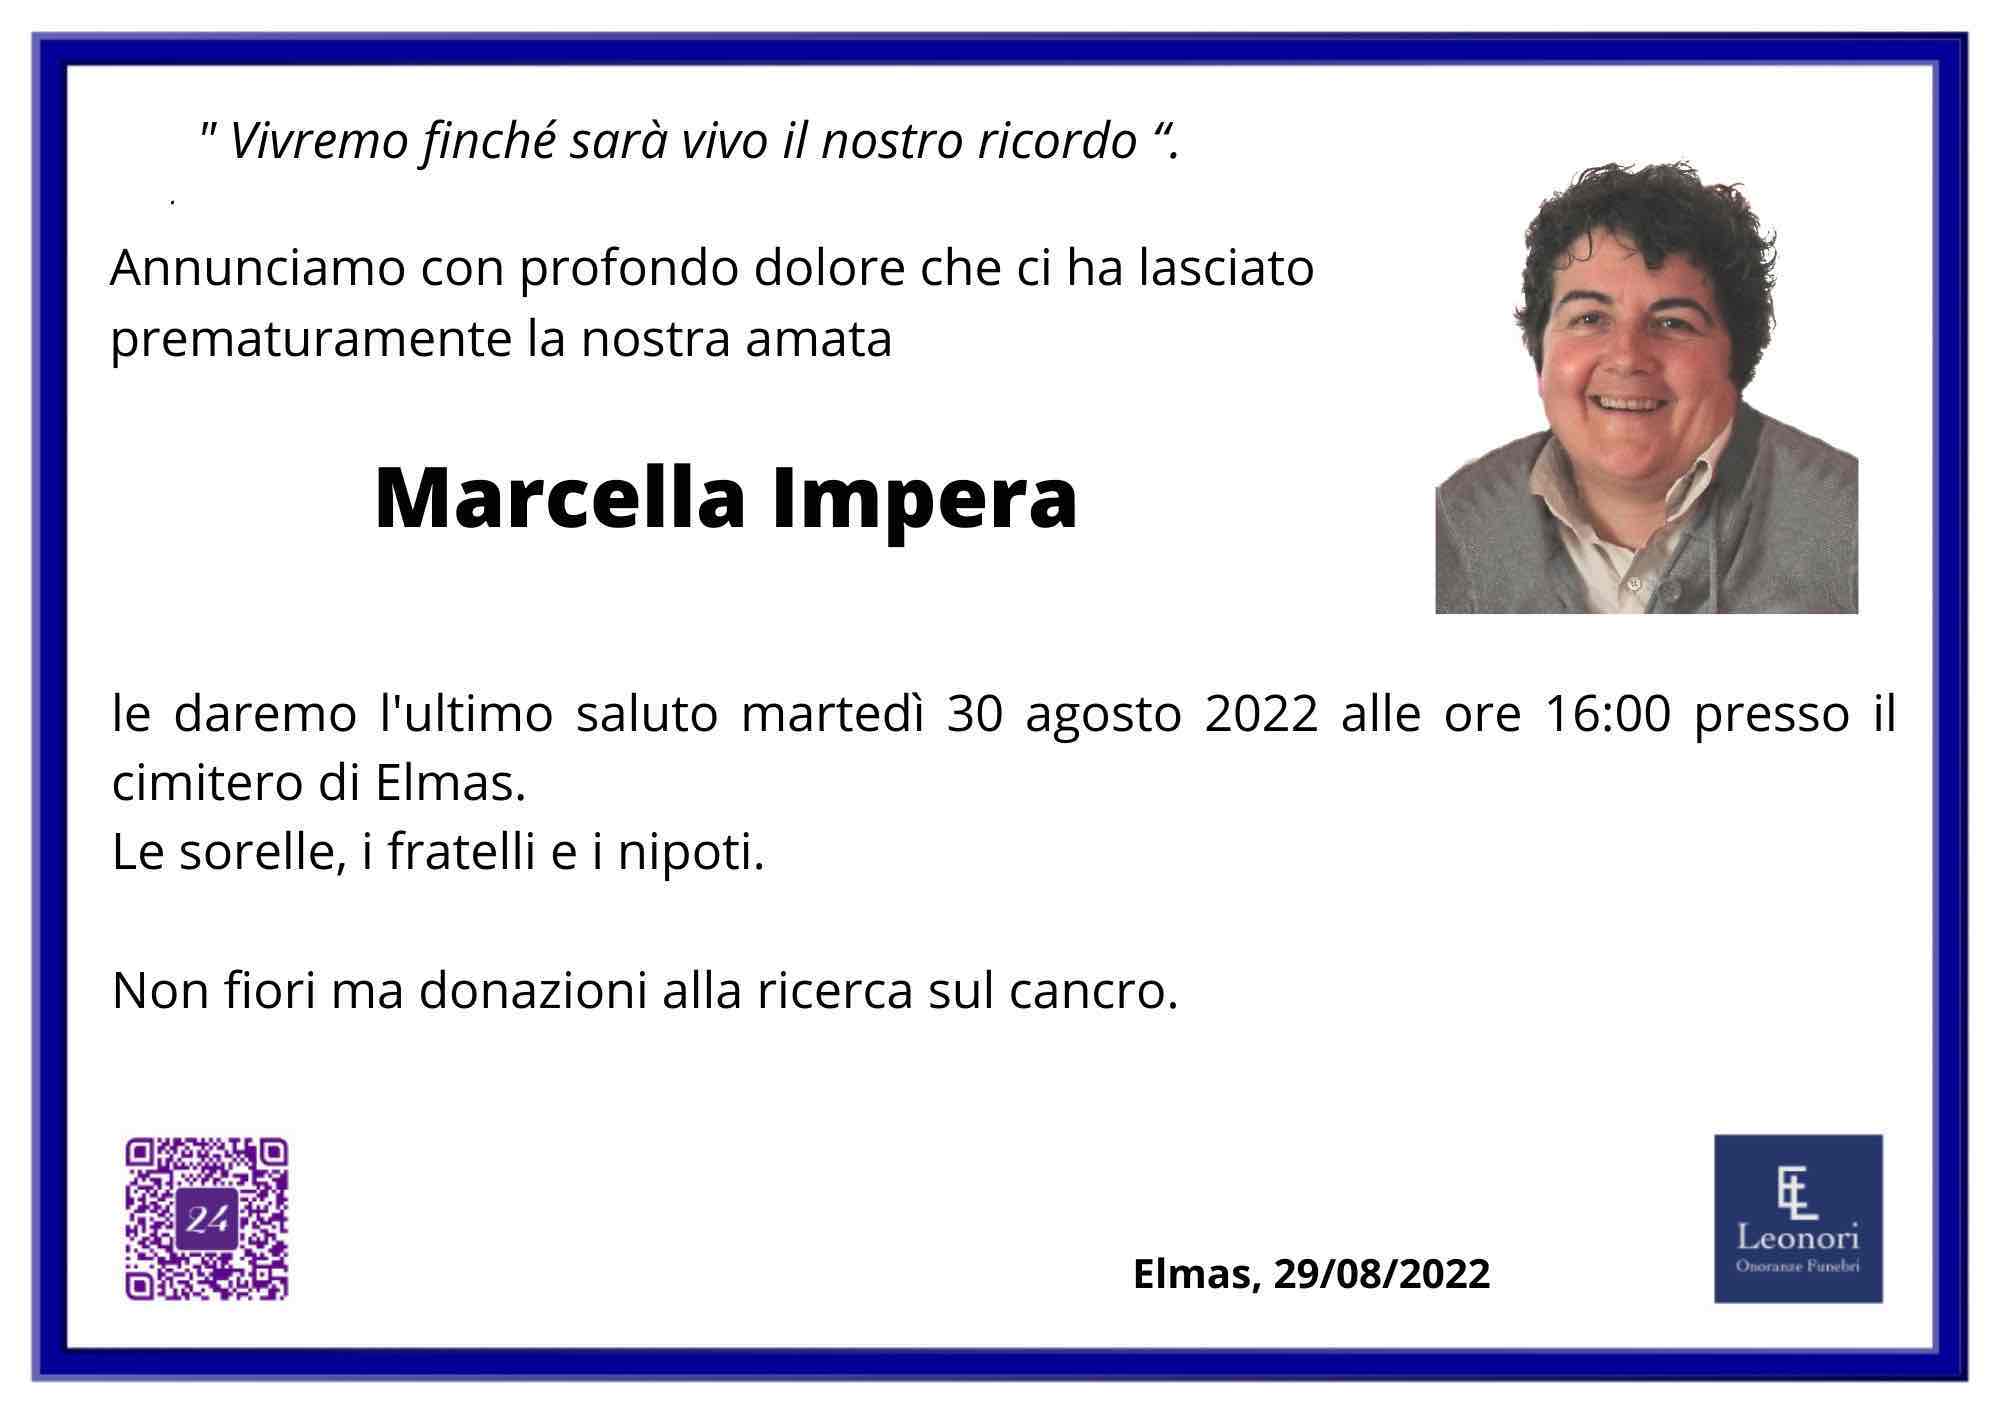 Marcella Impera